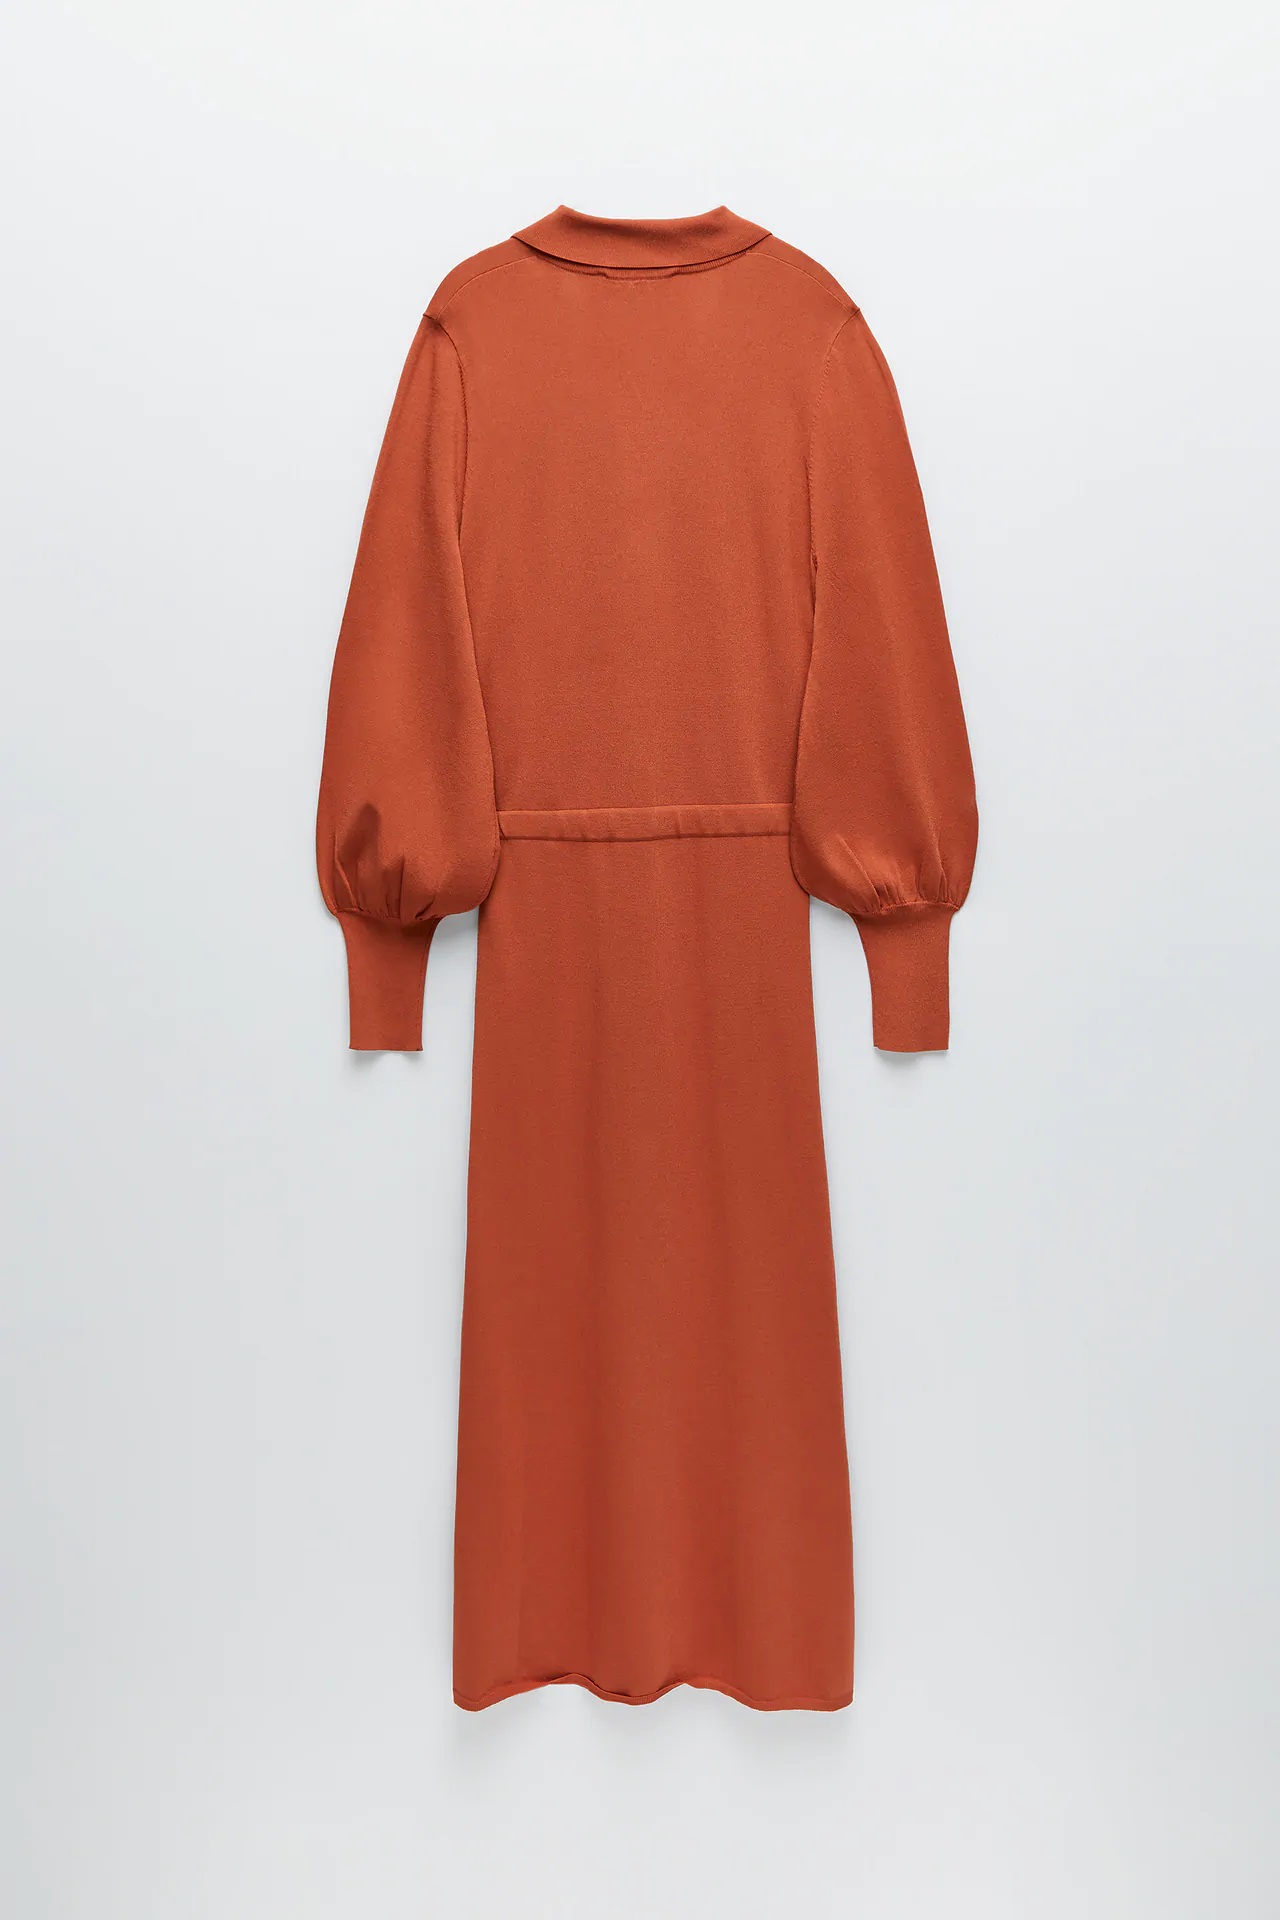 Este es el vestido camisero de Zara que sirve como chaqueta, un 2 en 1 perfecto para el otoño